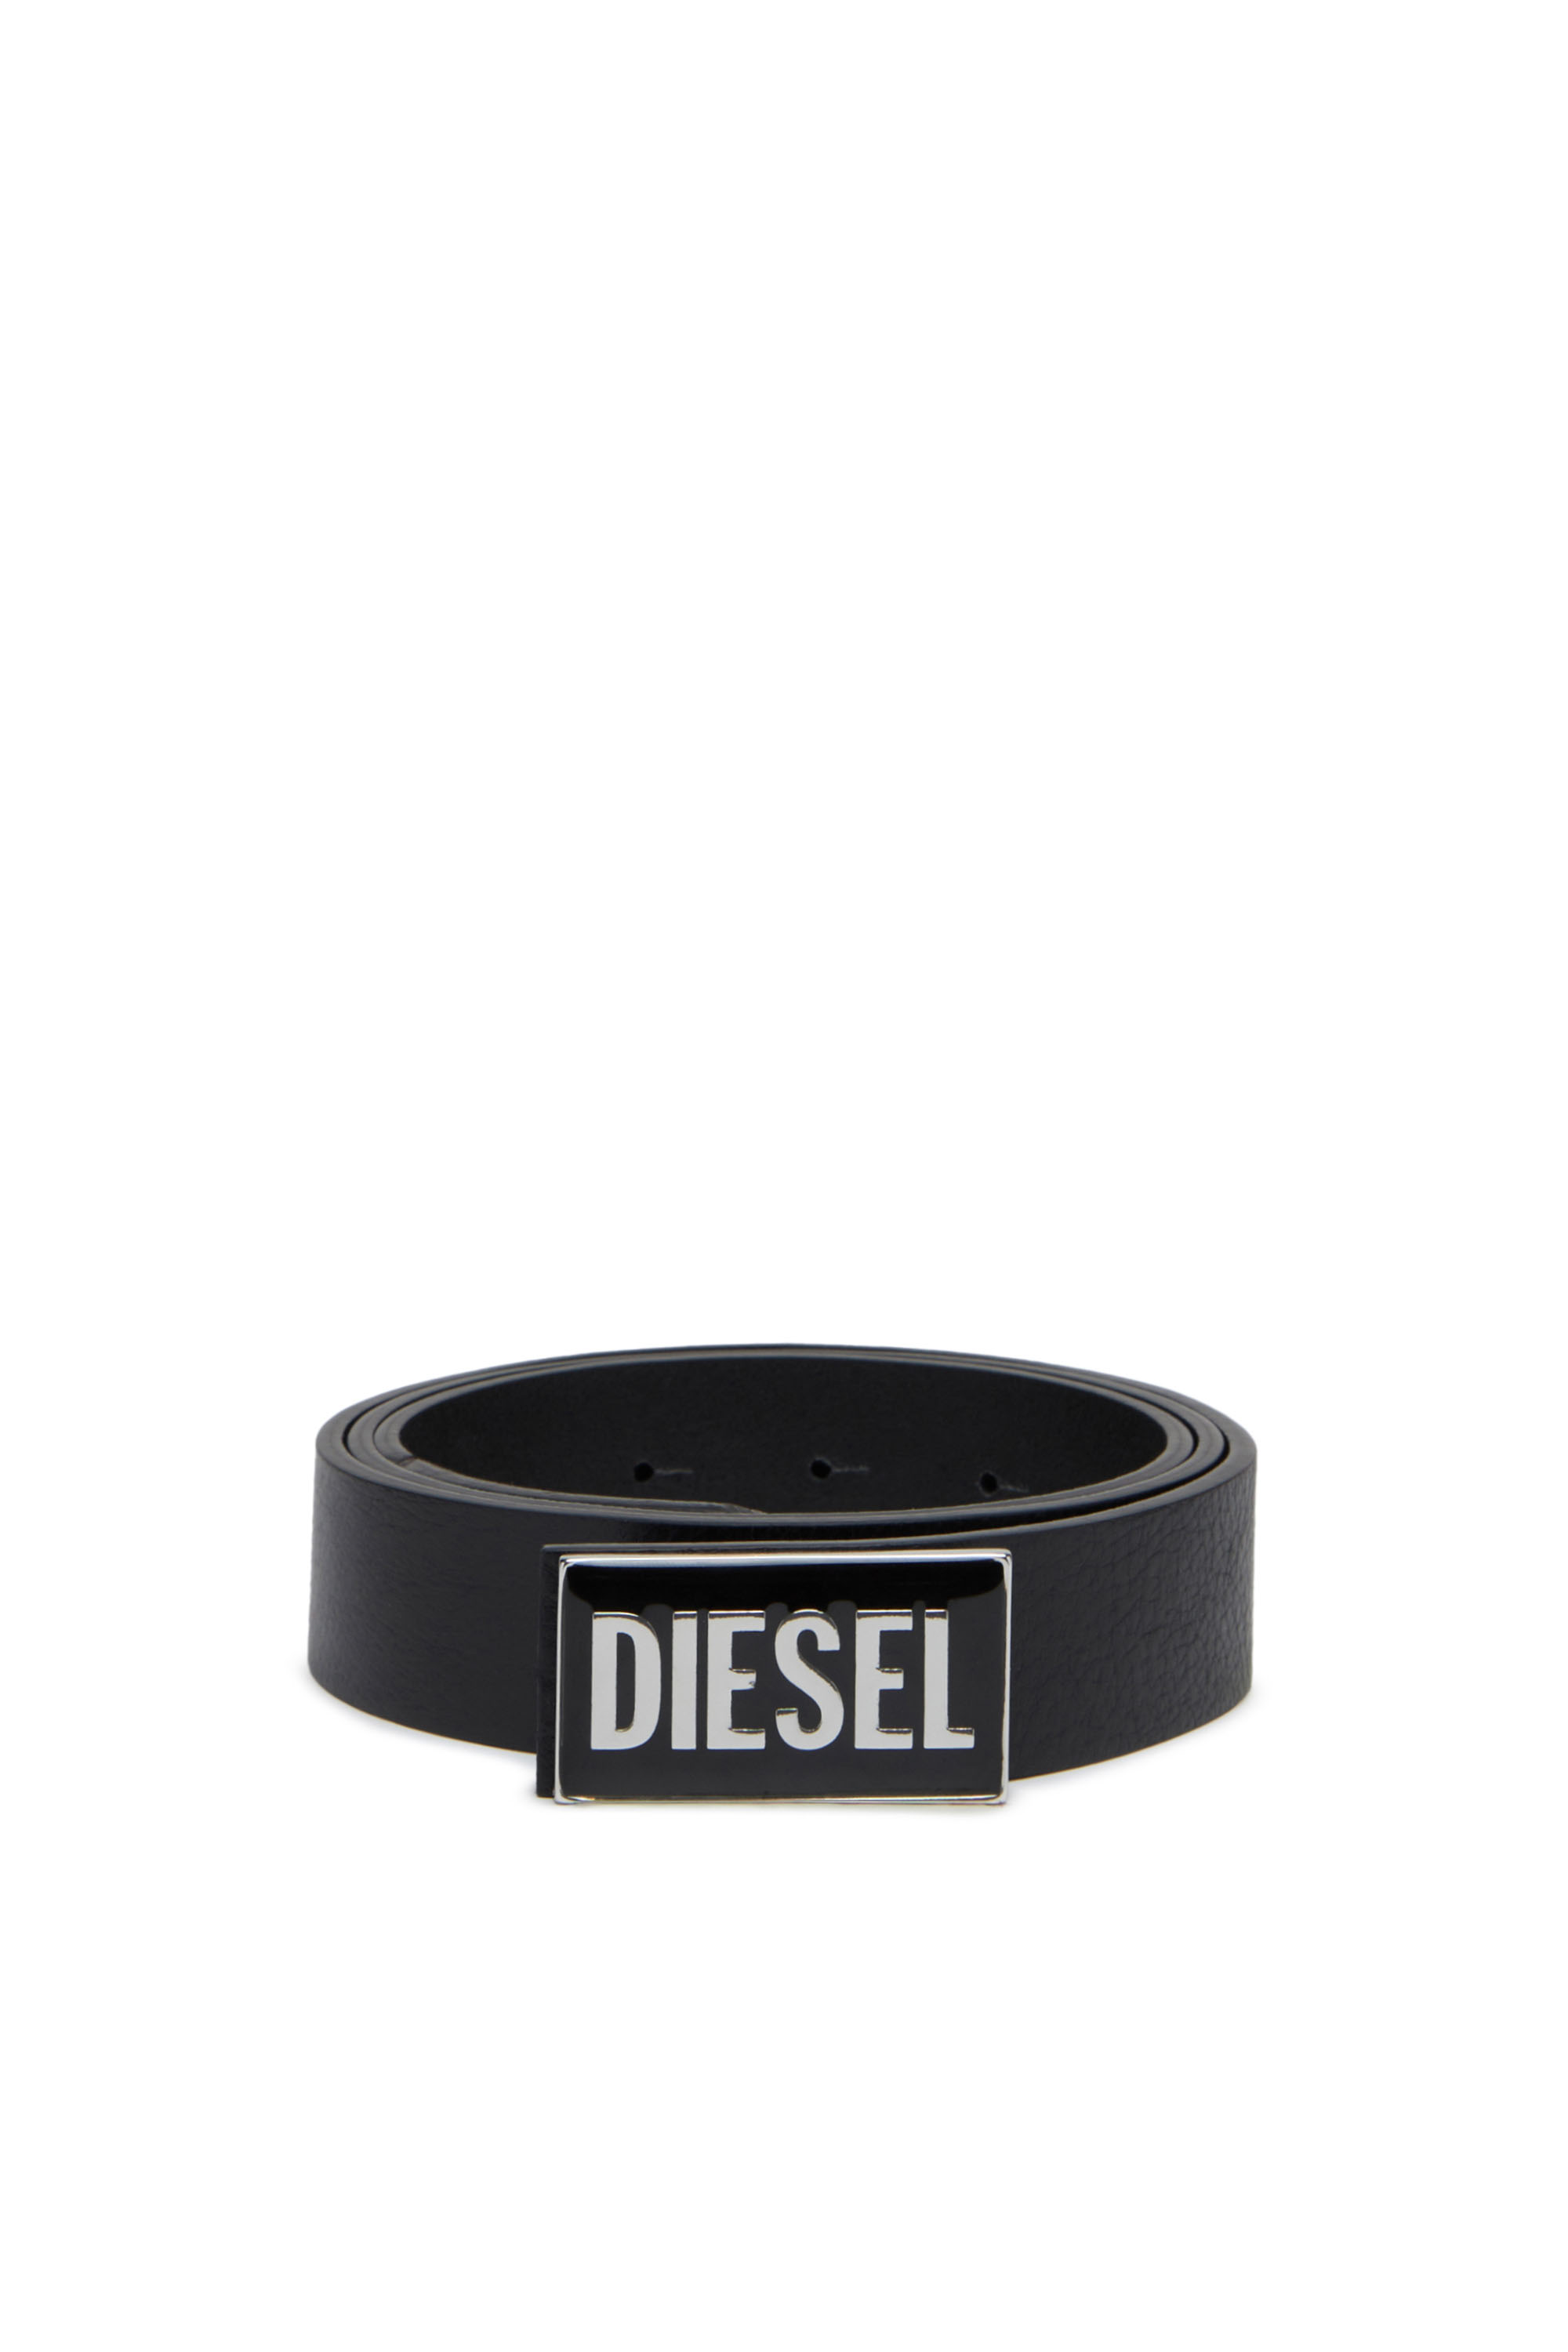 Diesel - B-GLOSSY, Black - Image 1